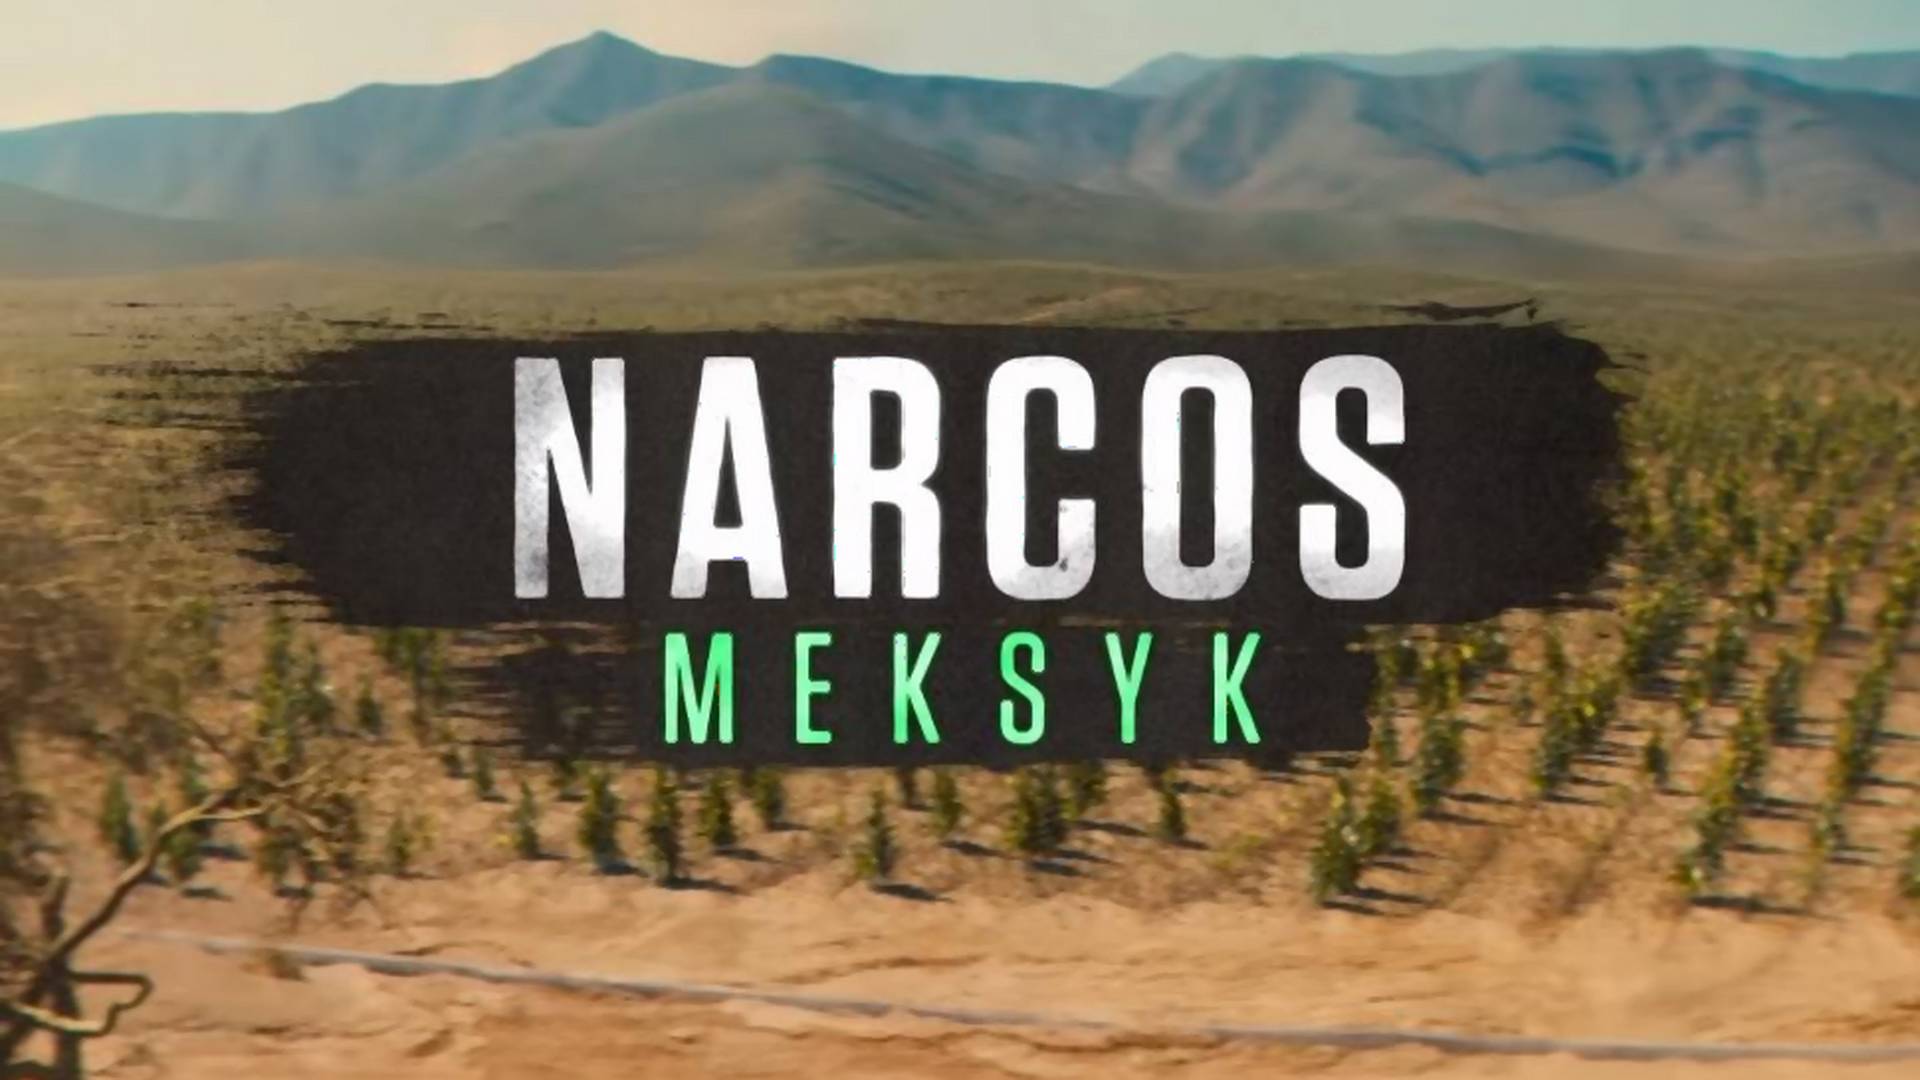 "Narcos" tym razem w Meksyku! Netflix zdradza datę premiery i pokazuje pierwszy zwiastun